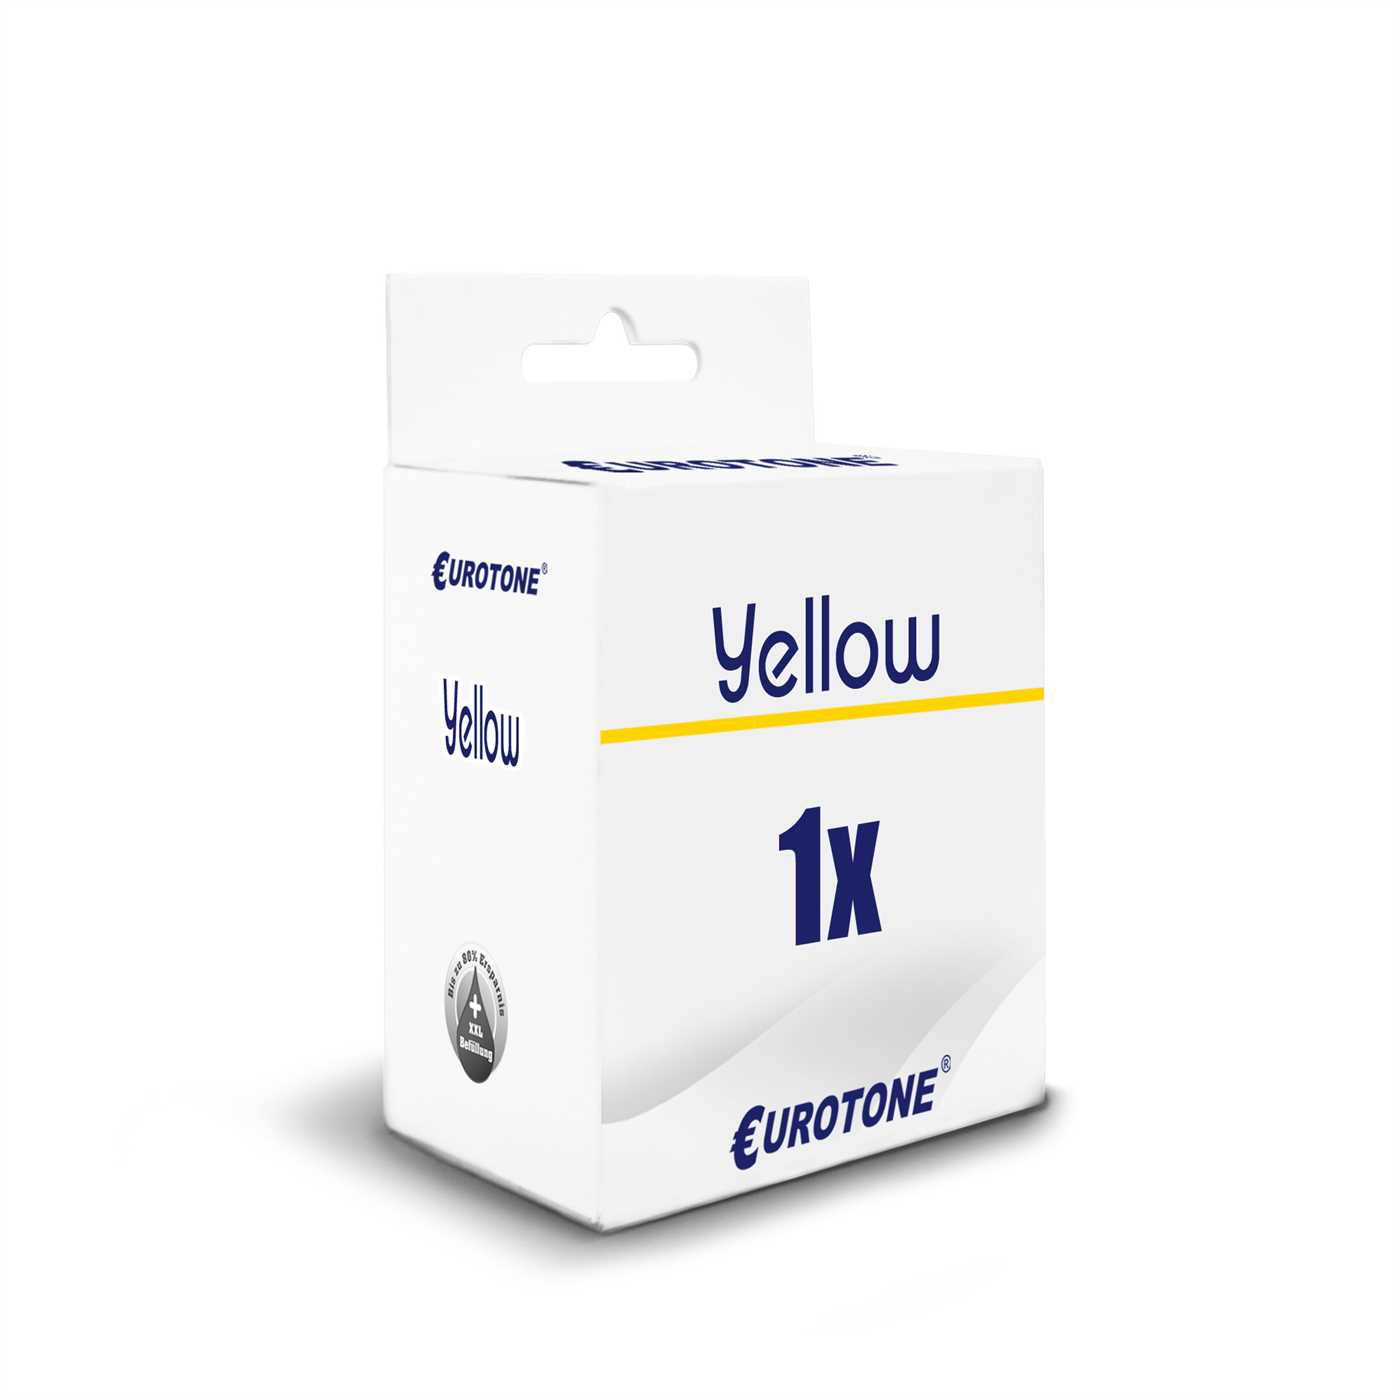 (Canon ET4737272 4543B001AA) CLI-526Y Yellow Ink Cartridge EUROTONE /